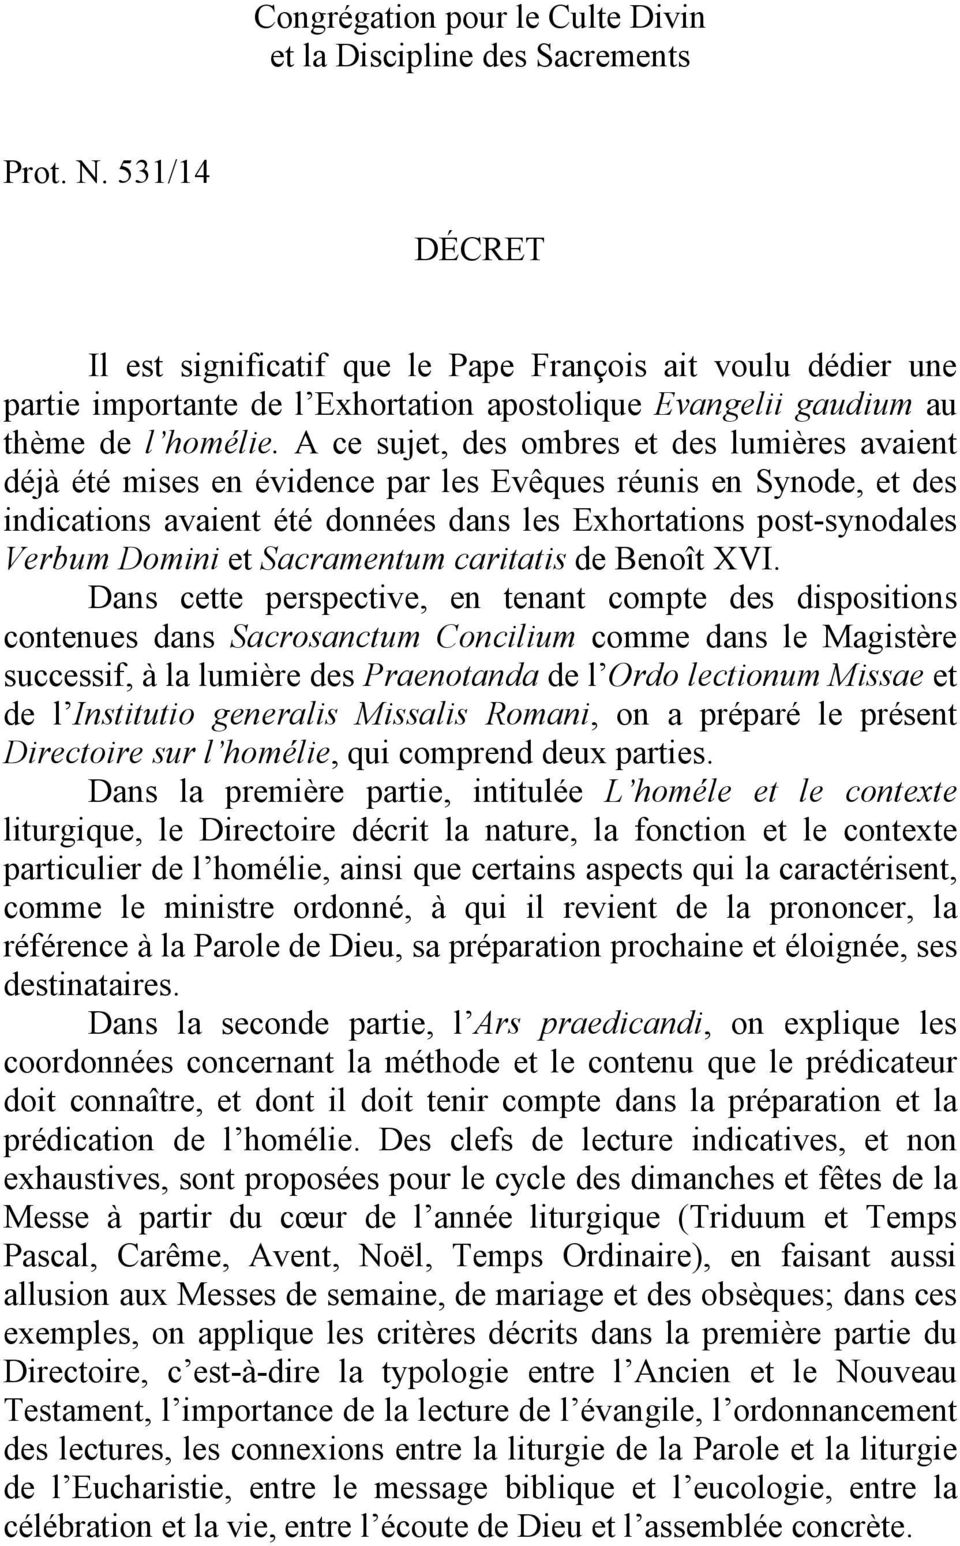 A ce sujet, des ombres et des lumières avaient déjà été mises en évidence par les Evêques réunis en Synode, et des indications avaient été données dans les Exhortations post-synodales Verbum Domini